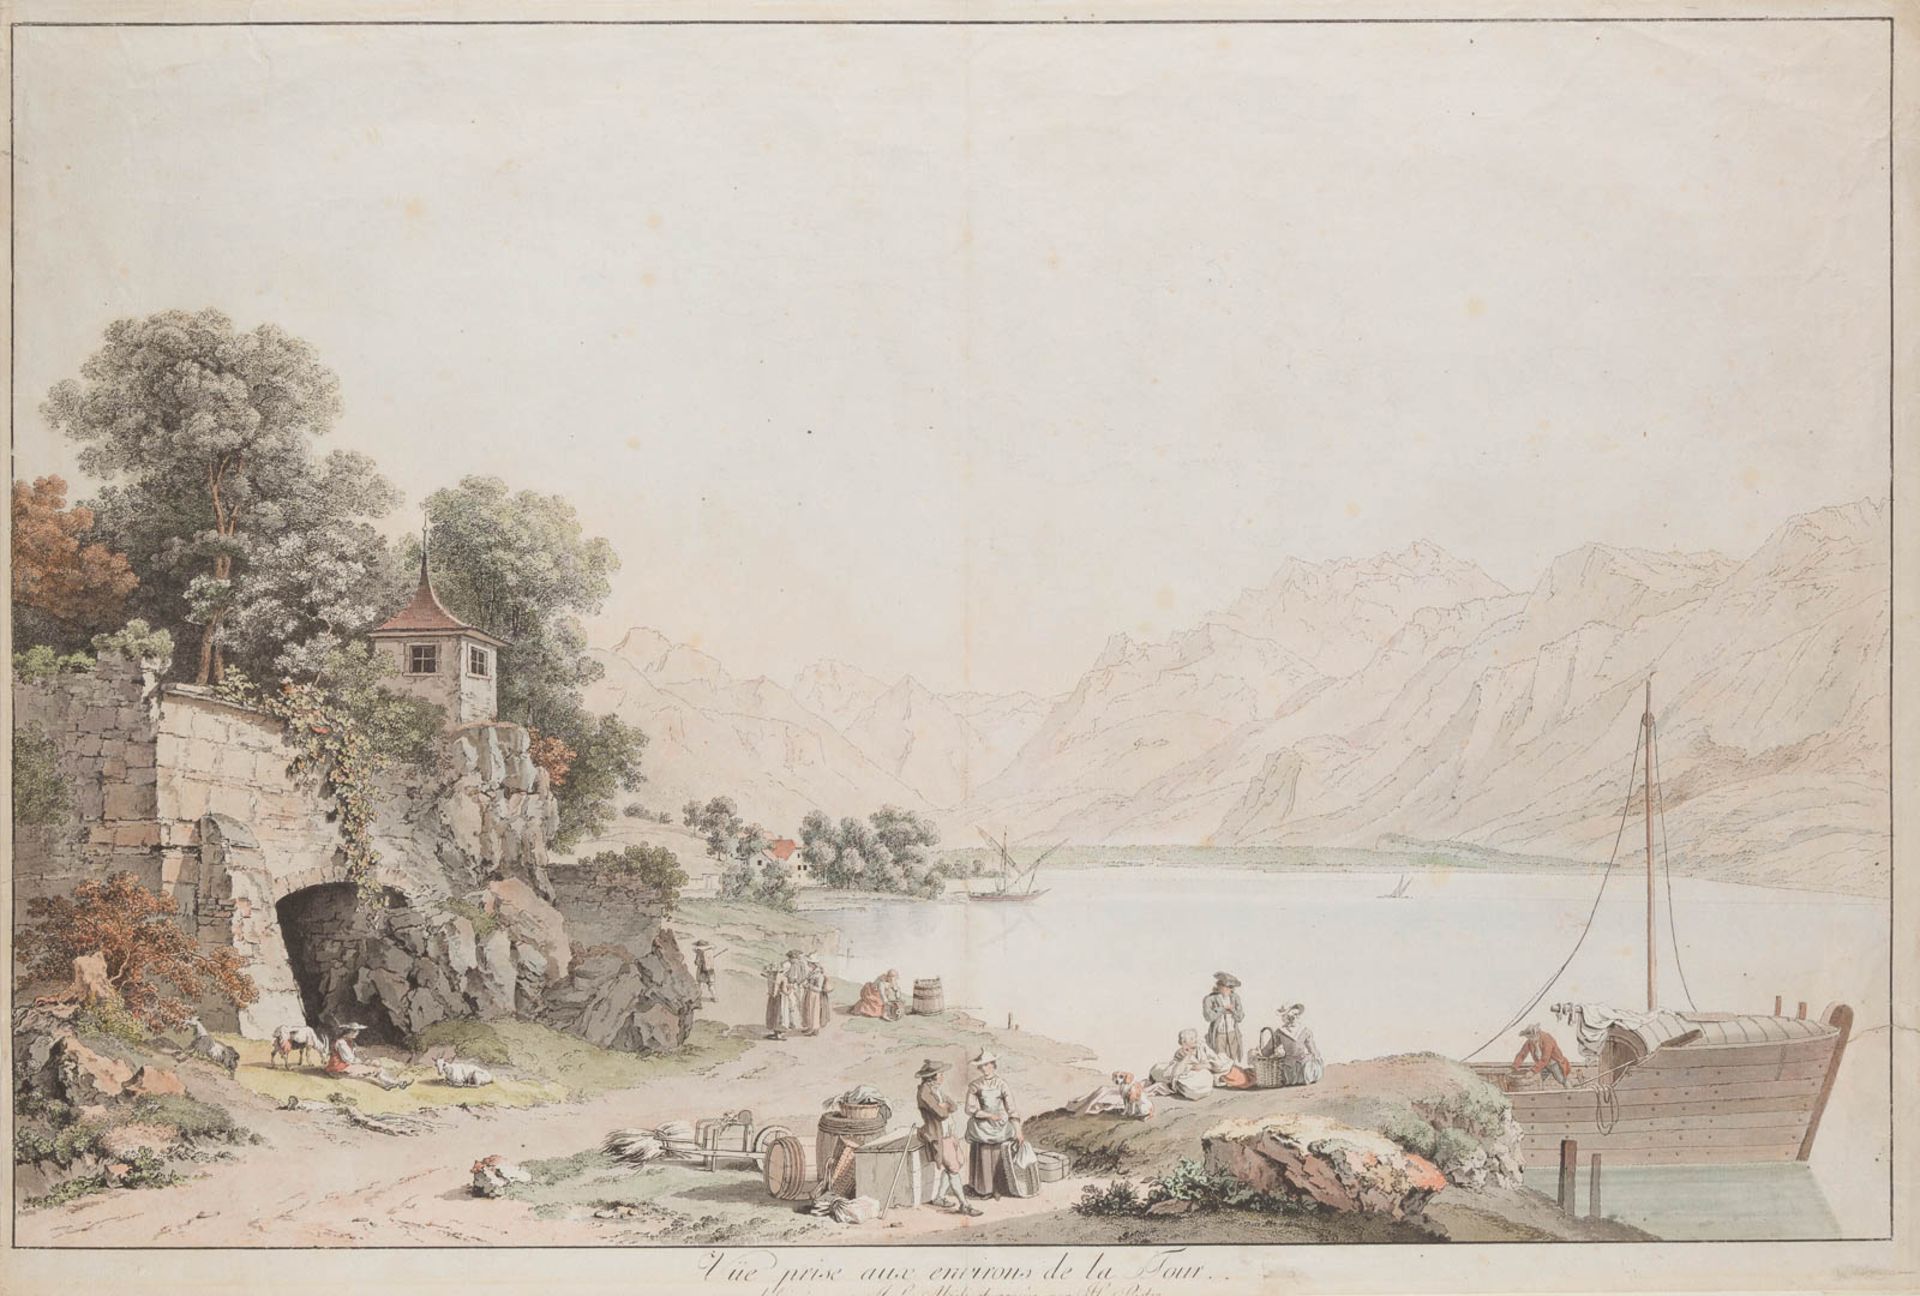 HEINRICH RIETER1751 Winterthur - 1818 Bern'VUE PRISE AUX ENVIRONS DE LA TOUR' (NACH JOHANN LUDWIG